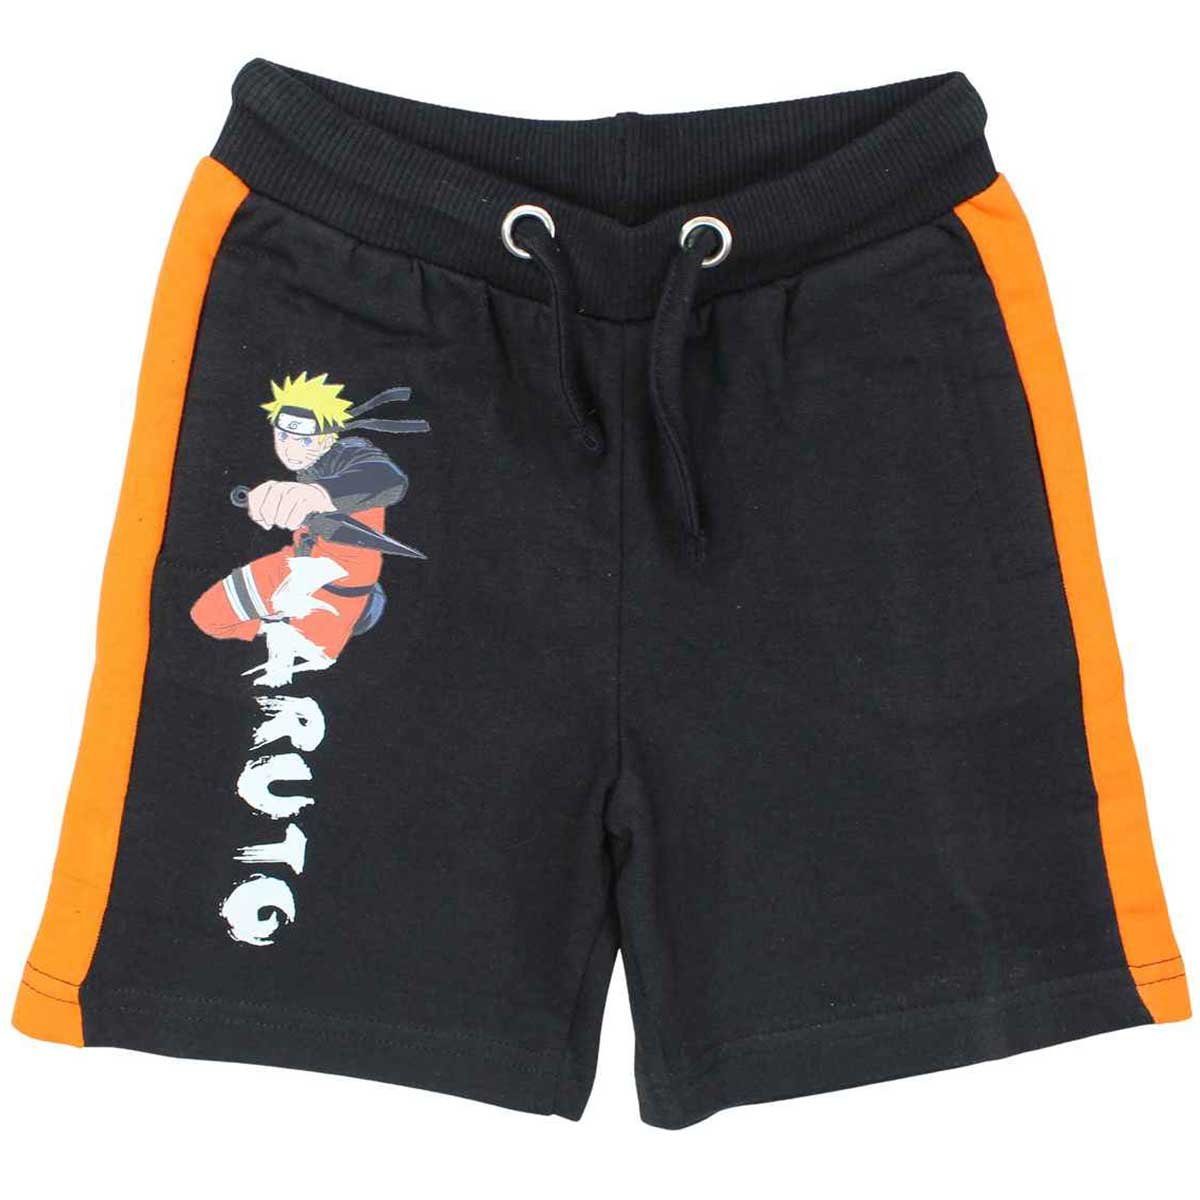 Kinder Naruto Shippuden Shorts 100% Shorts Jungen bis Baumwolle Naruto Gr. Schwarz 110 152